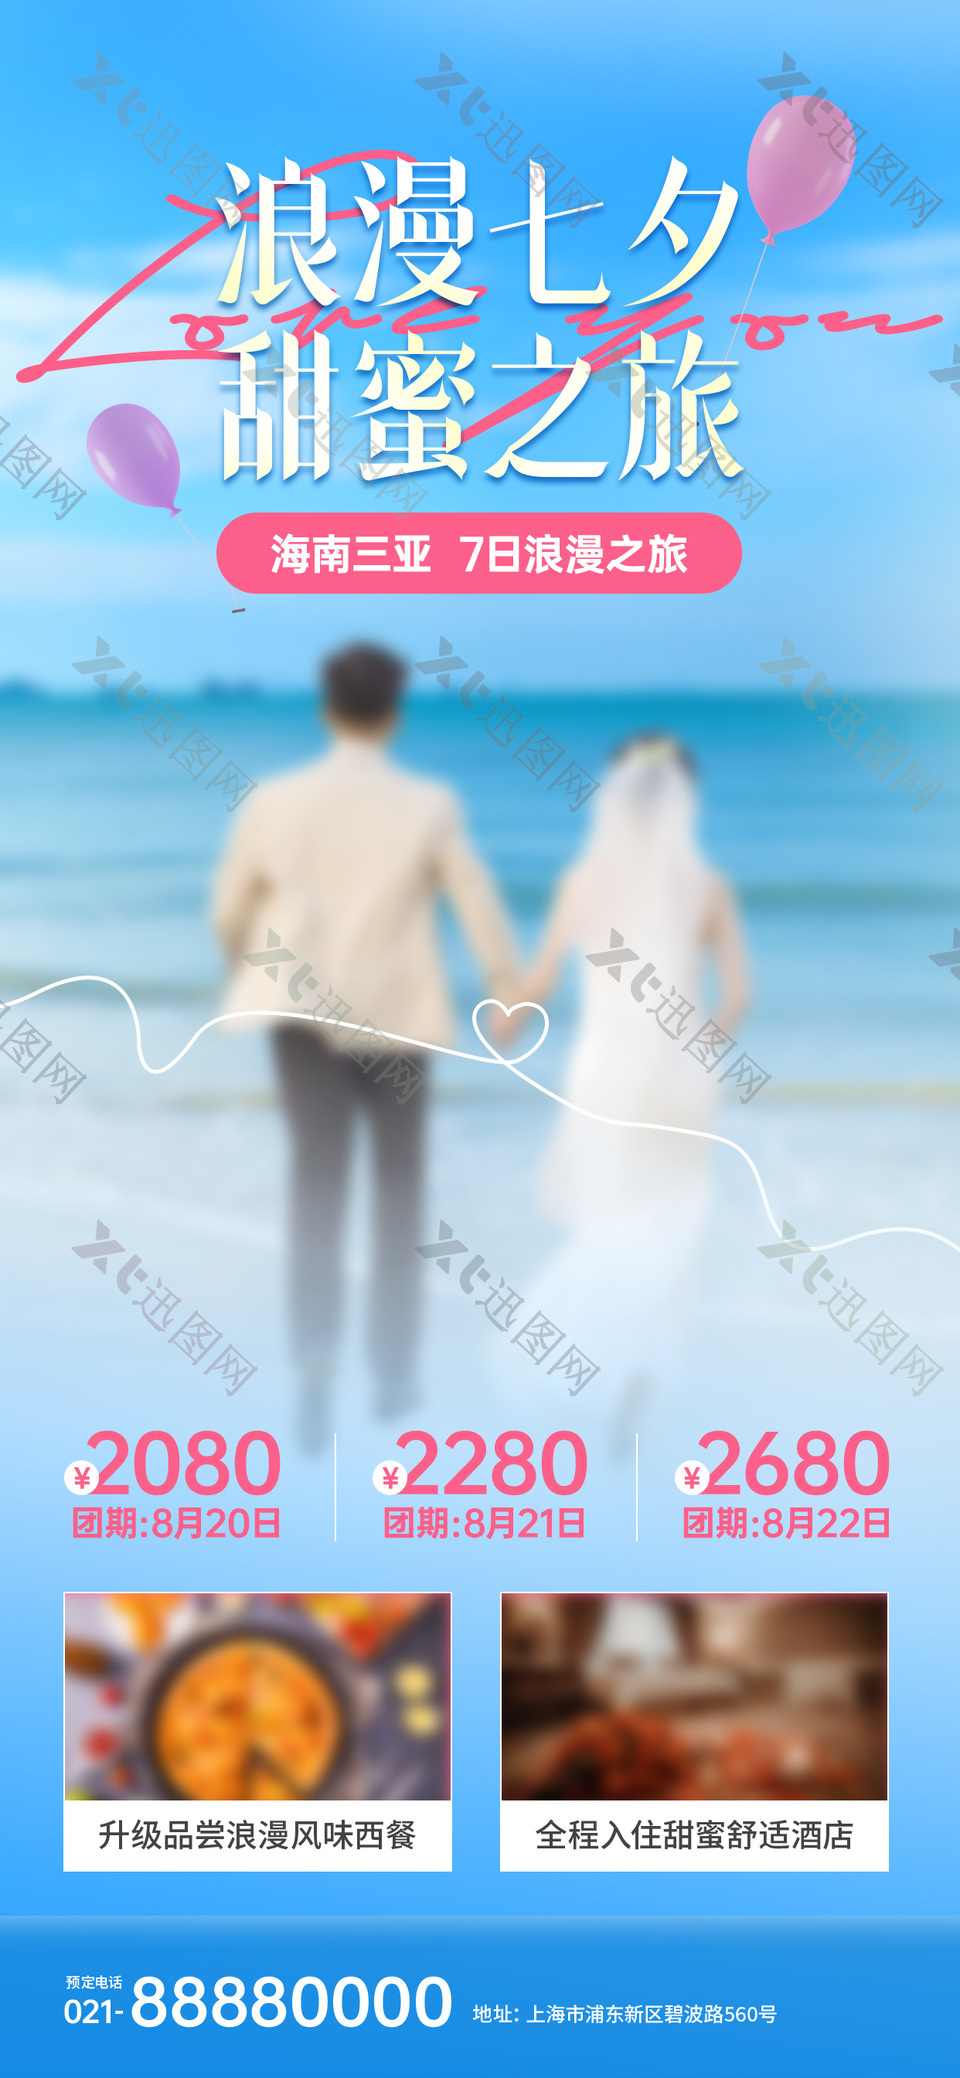 浪漫七夕甜蜜之旅旅行社DM宣传单设计